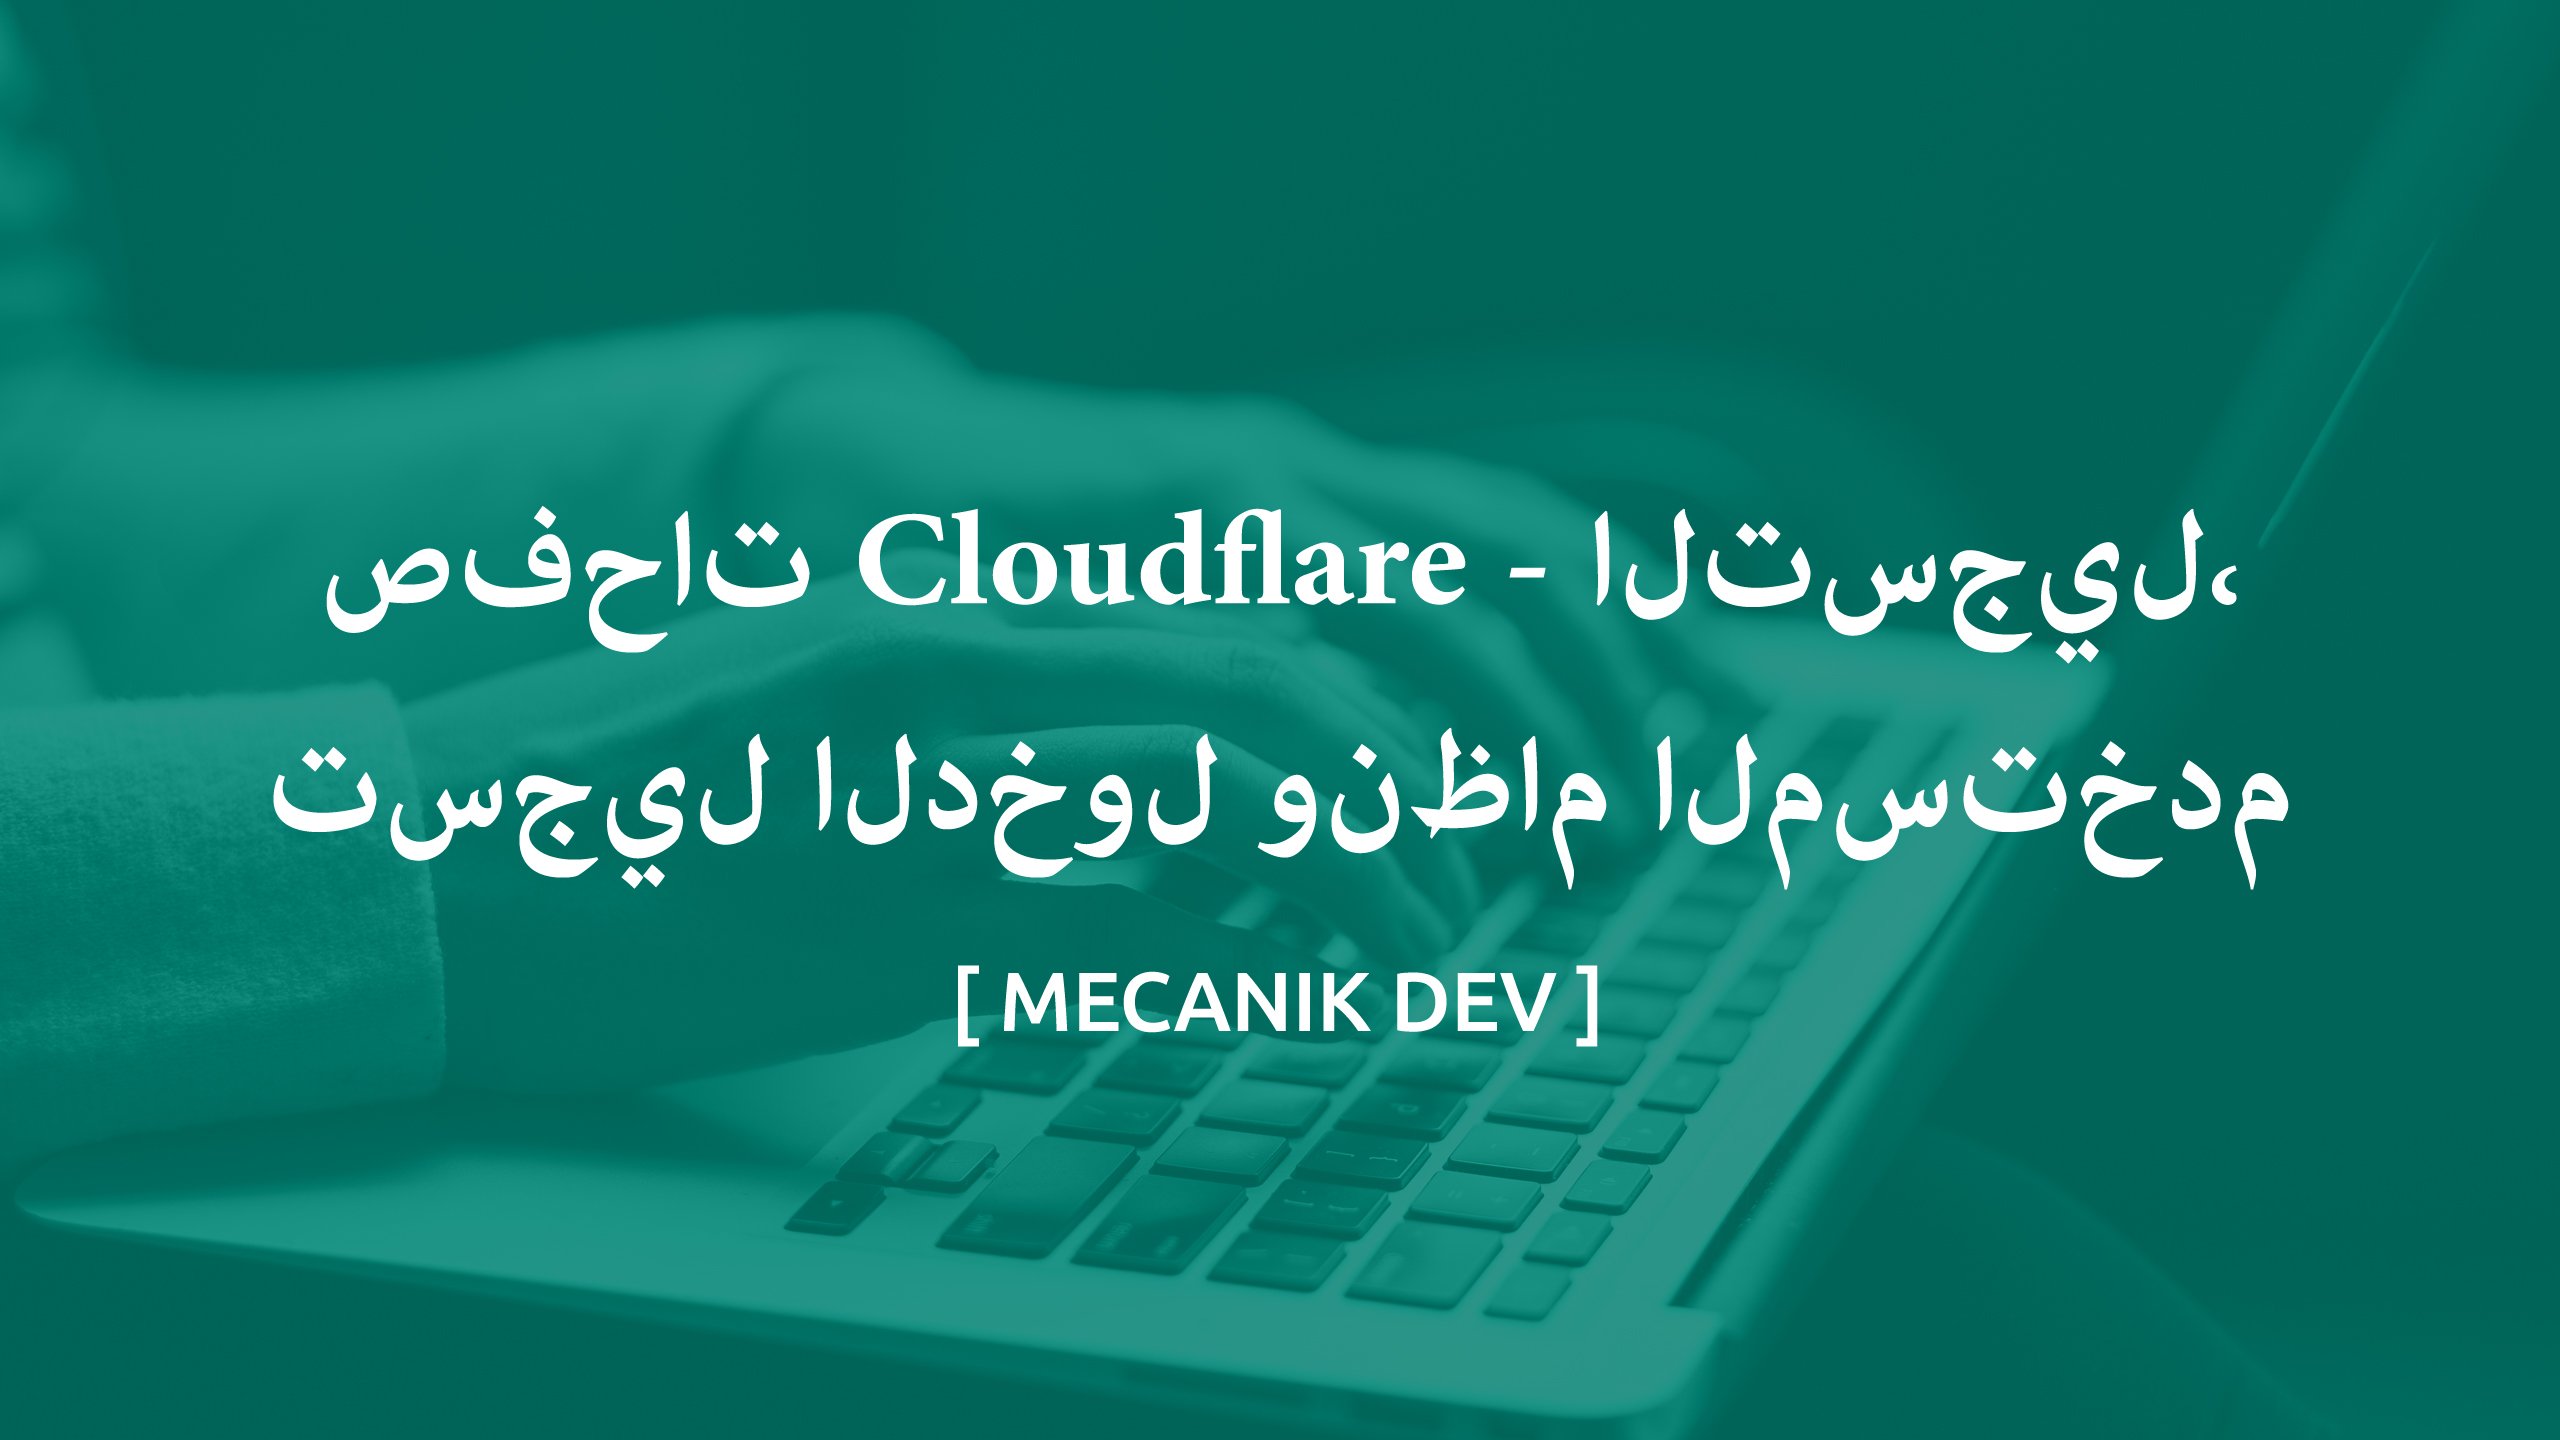 صفحات Cloudflare - التسجيل وتسجيل الدخول ونظام المستخدم